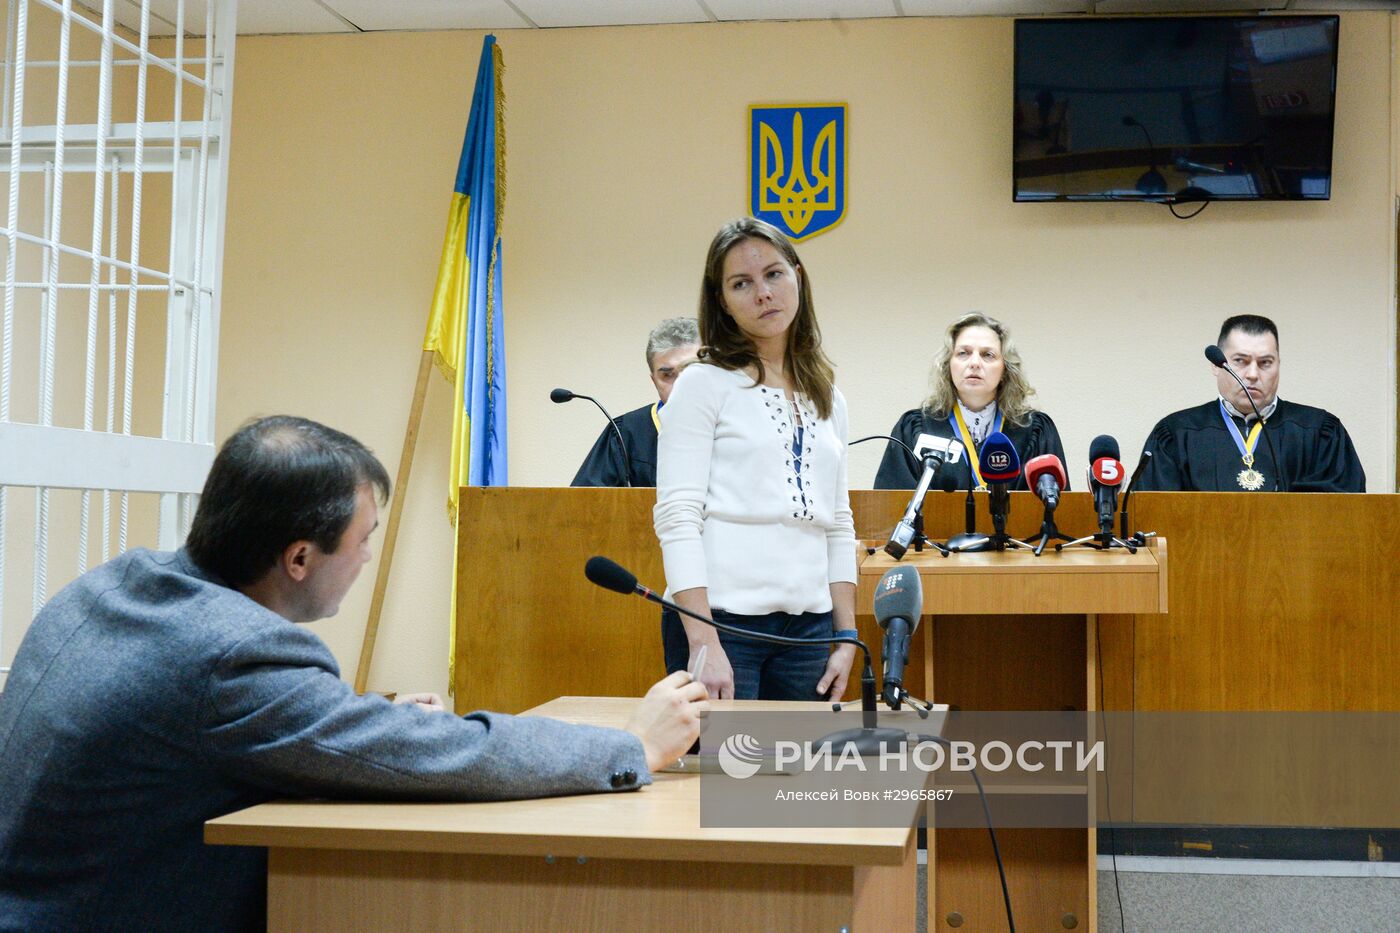 Допрос сестры Н.Савченко в киевском суде по делу против главы ЛНР И.Плотницкого